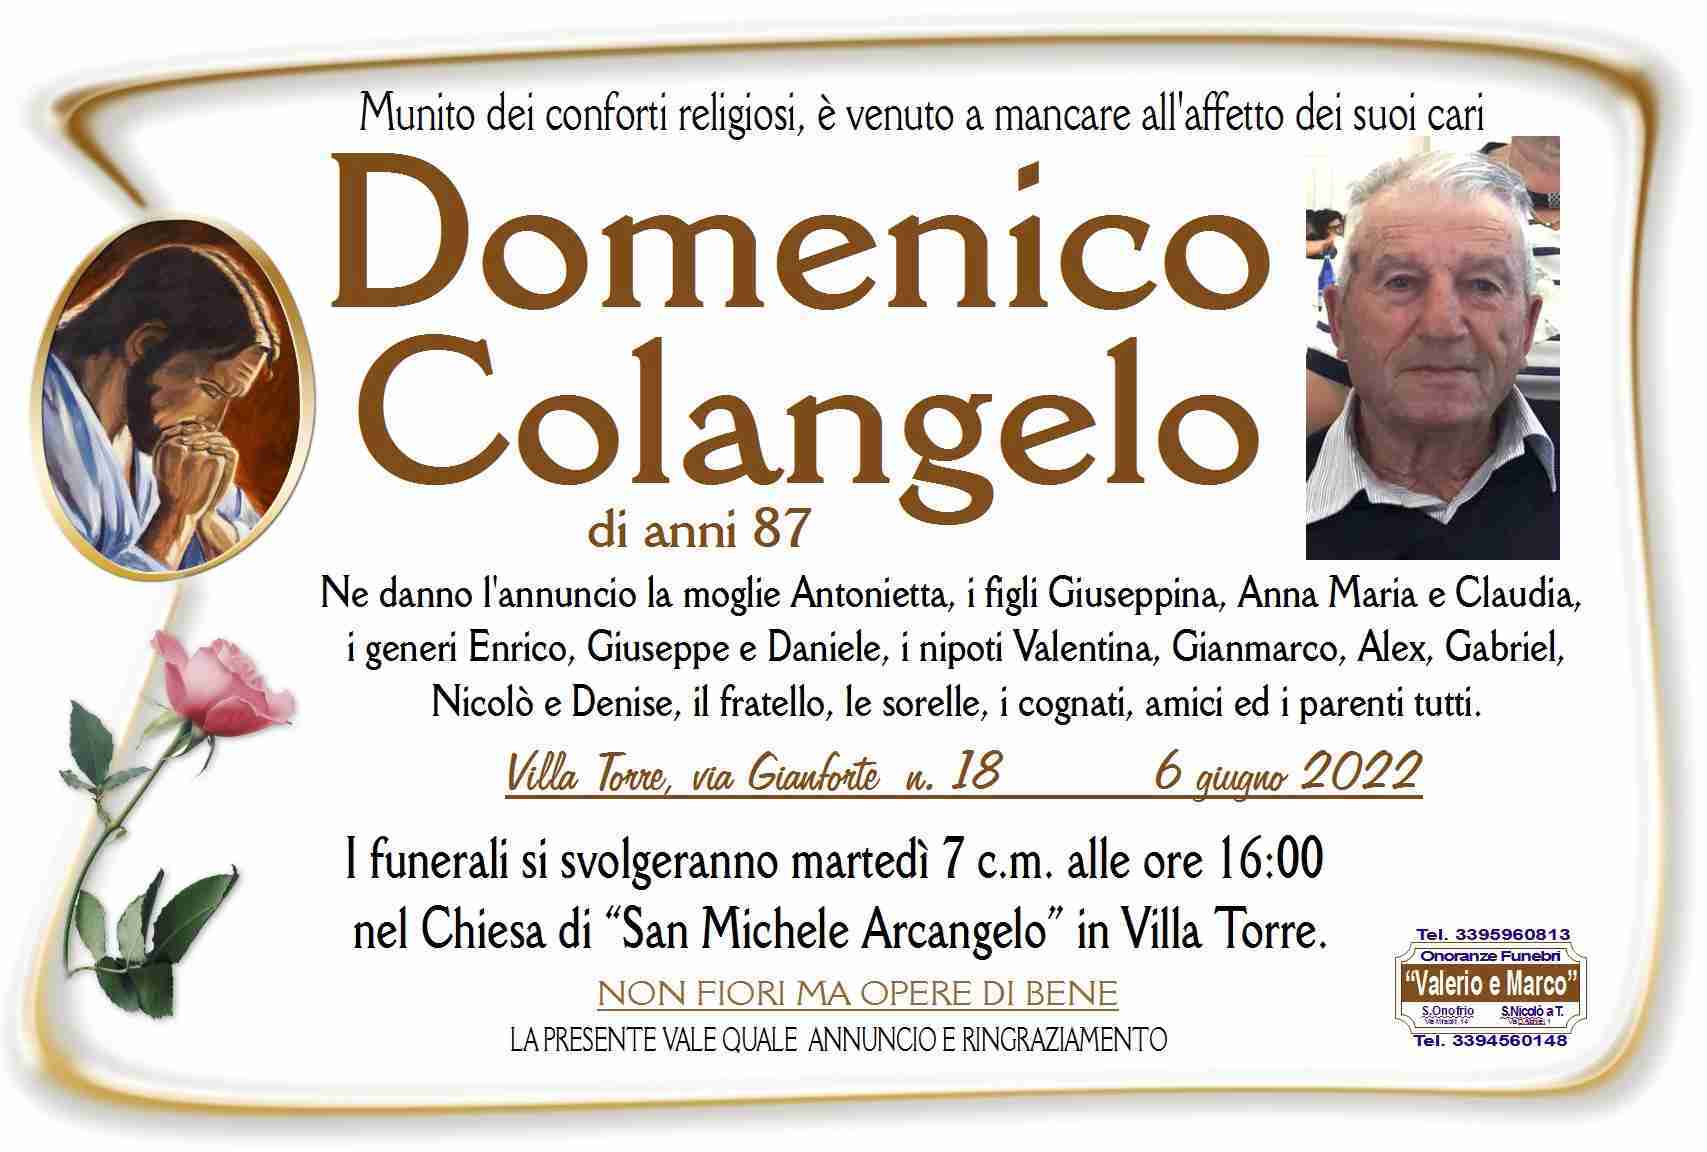 Domenico Colangelo